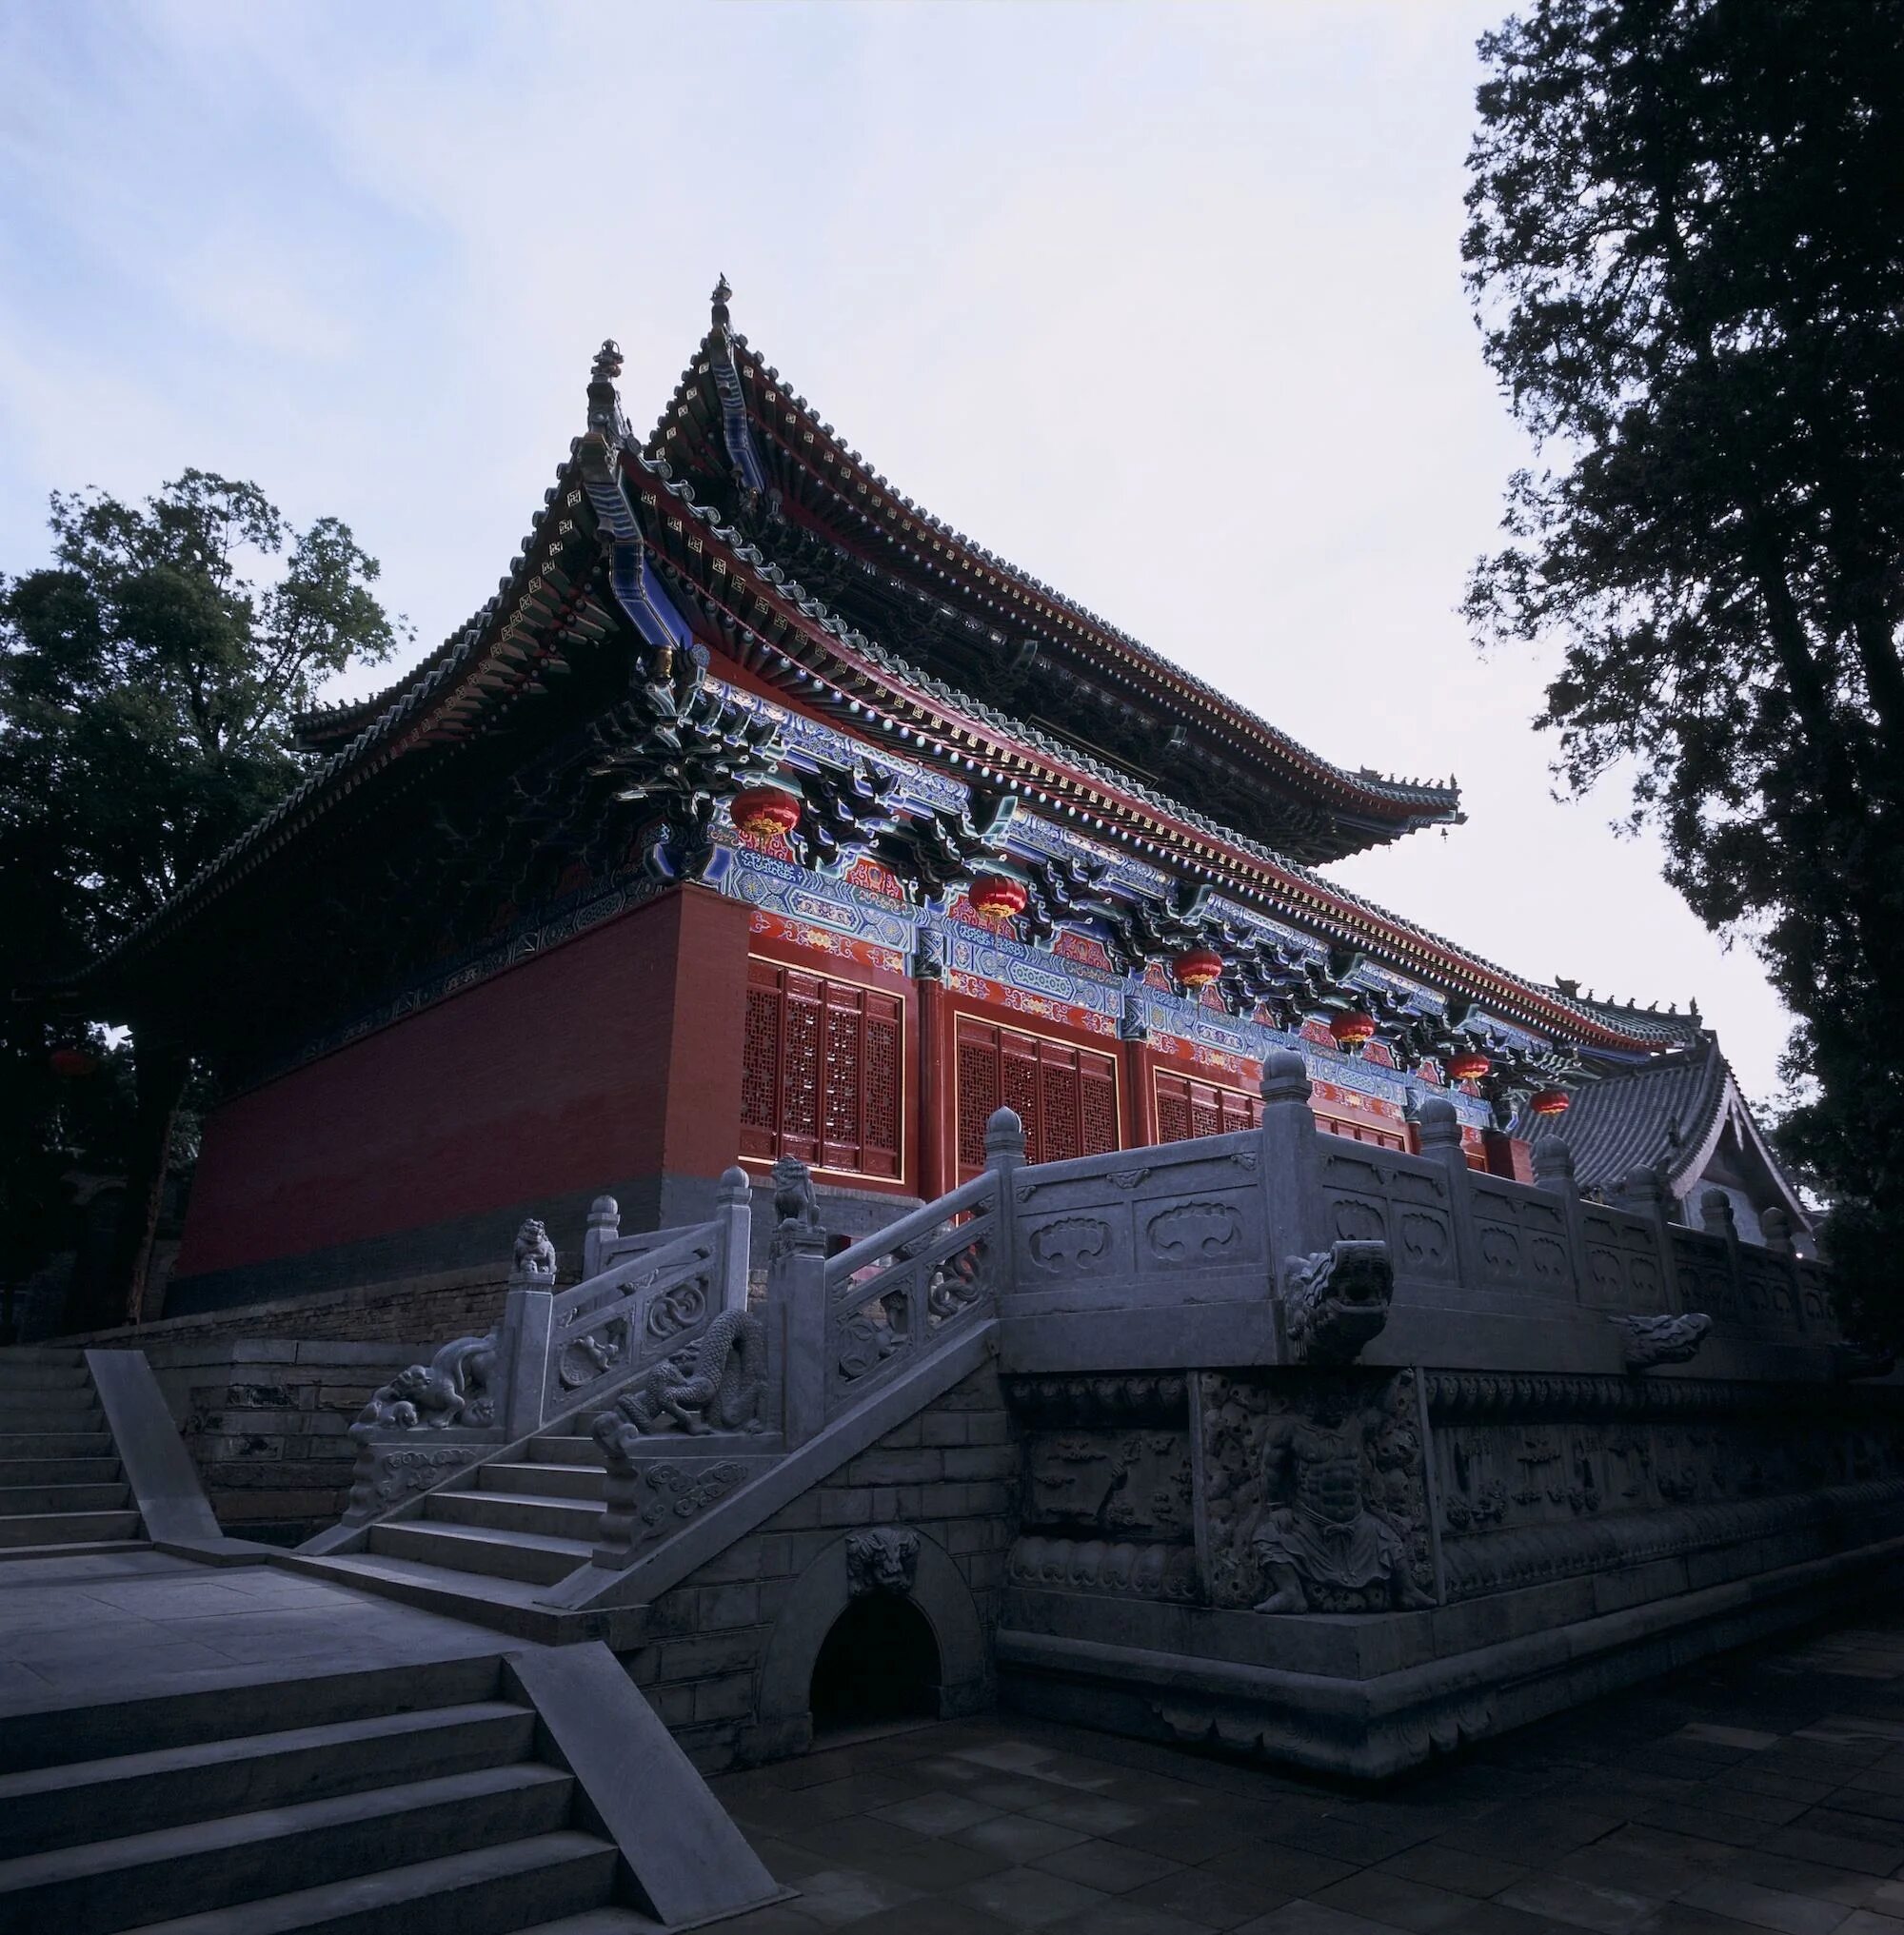 Shaolin temple. Храм Шаолинь Хэнань. Монастырь Шаолинь Китай. Монастырь Шаолинь провинция Хэнань. Буддийский храм Шаолинь.